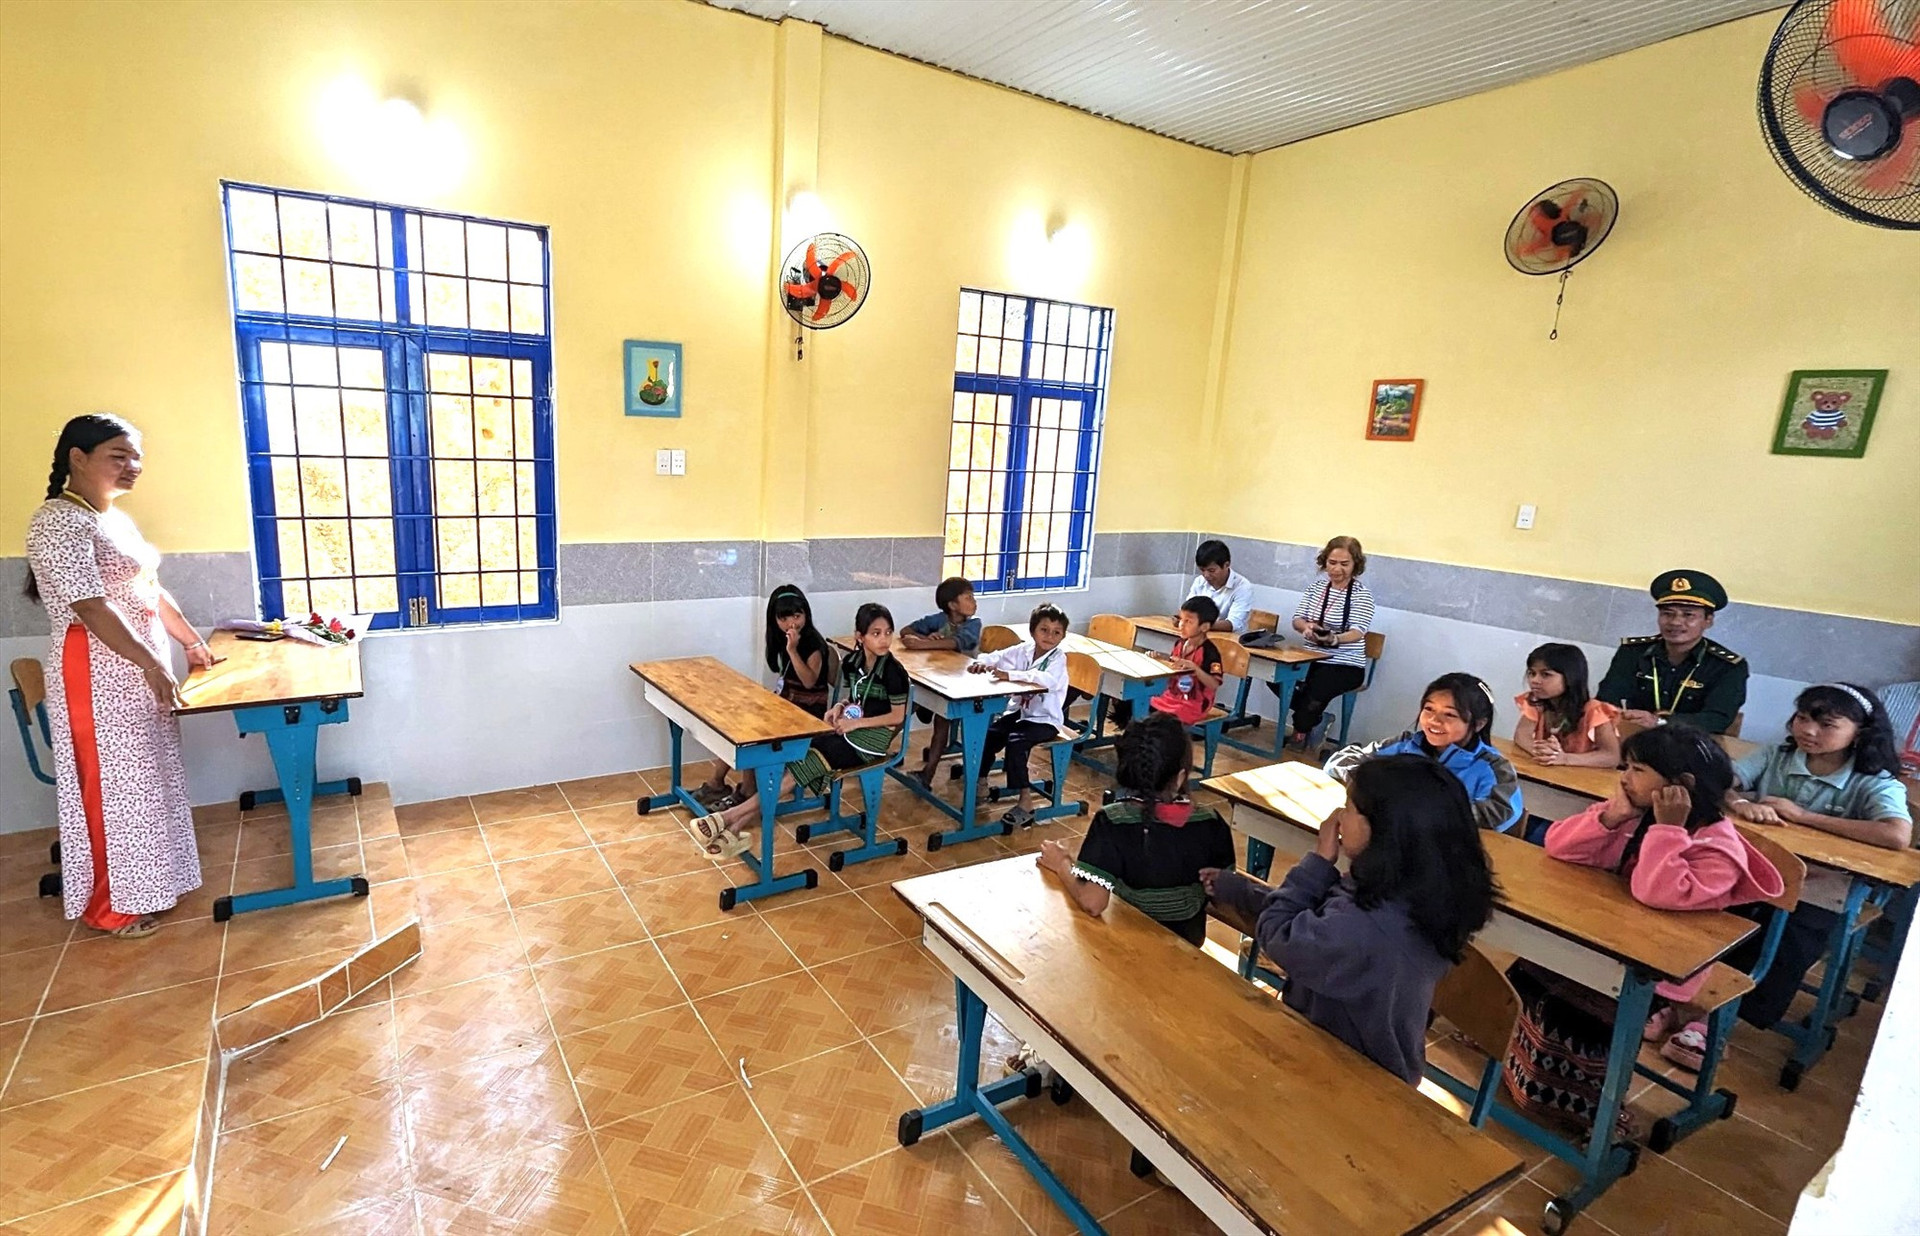 Trường học tại thôn Pứt (xã Ga Ry) được hình thành từ sự kết nối của cán bộ chiến sĩ biên phòng với các nhà hảo tâm. Ảnh: Đ.N